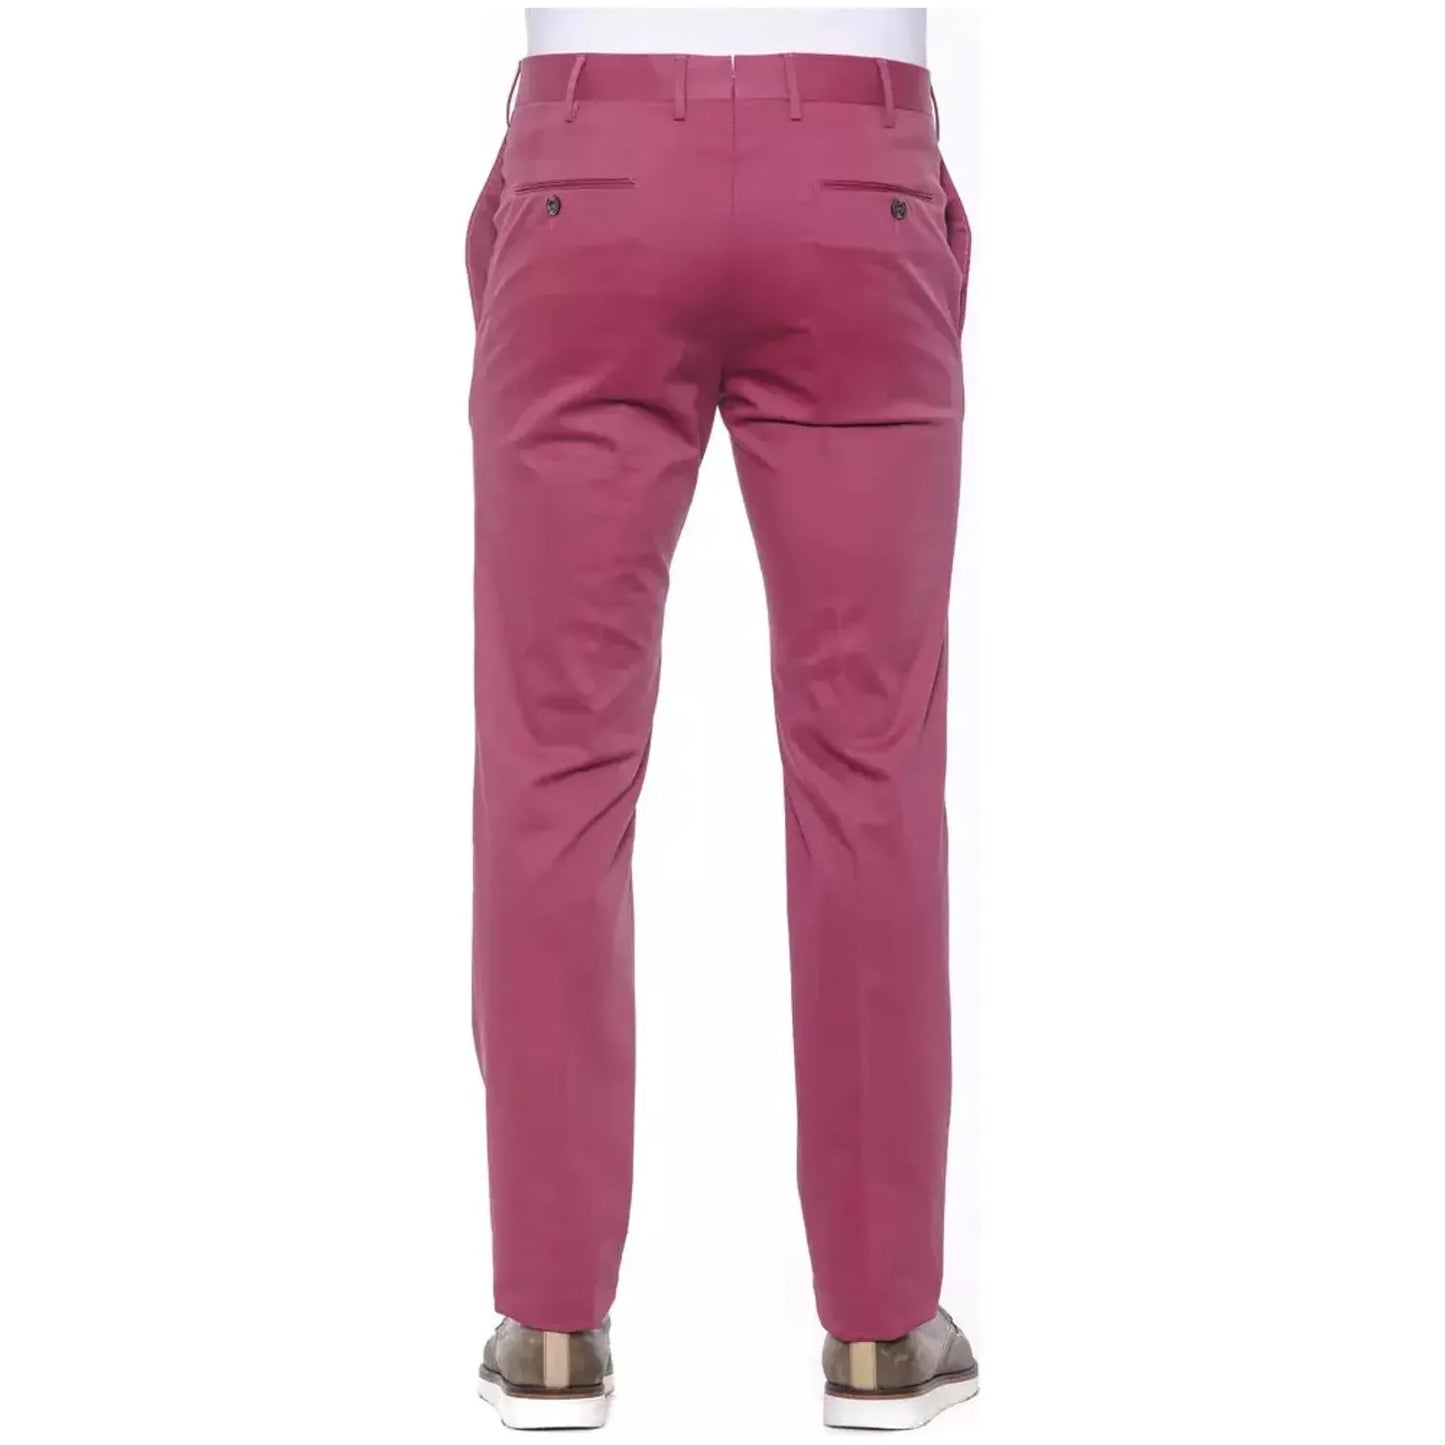 PT Torino Fuchsia PT Torino Men's Fashion Trousers Jeans & Pants fuchsia-cotton-jeans-pant-1 stock_product_image_20768_1532739188-16-42f3ca25-43c.webp